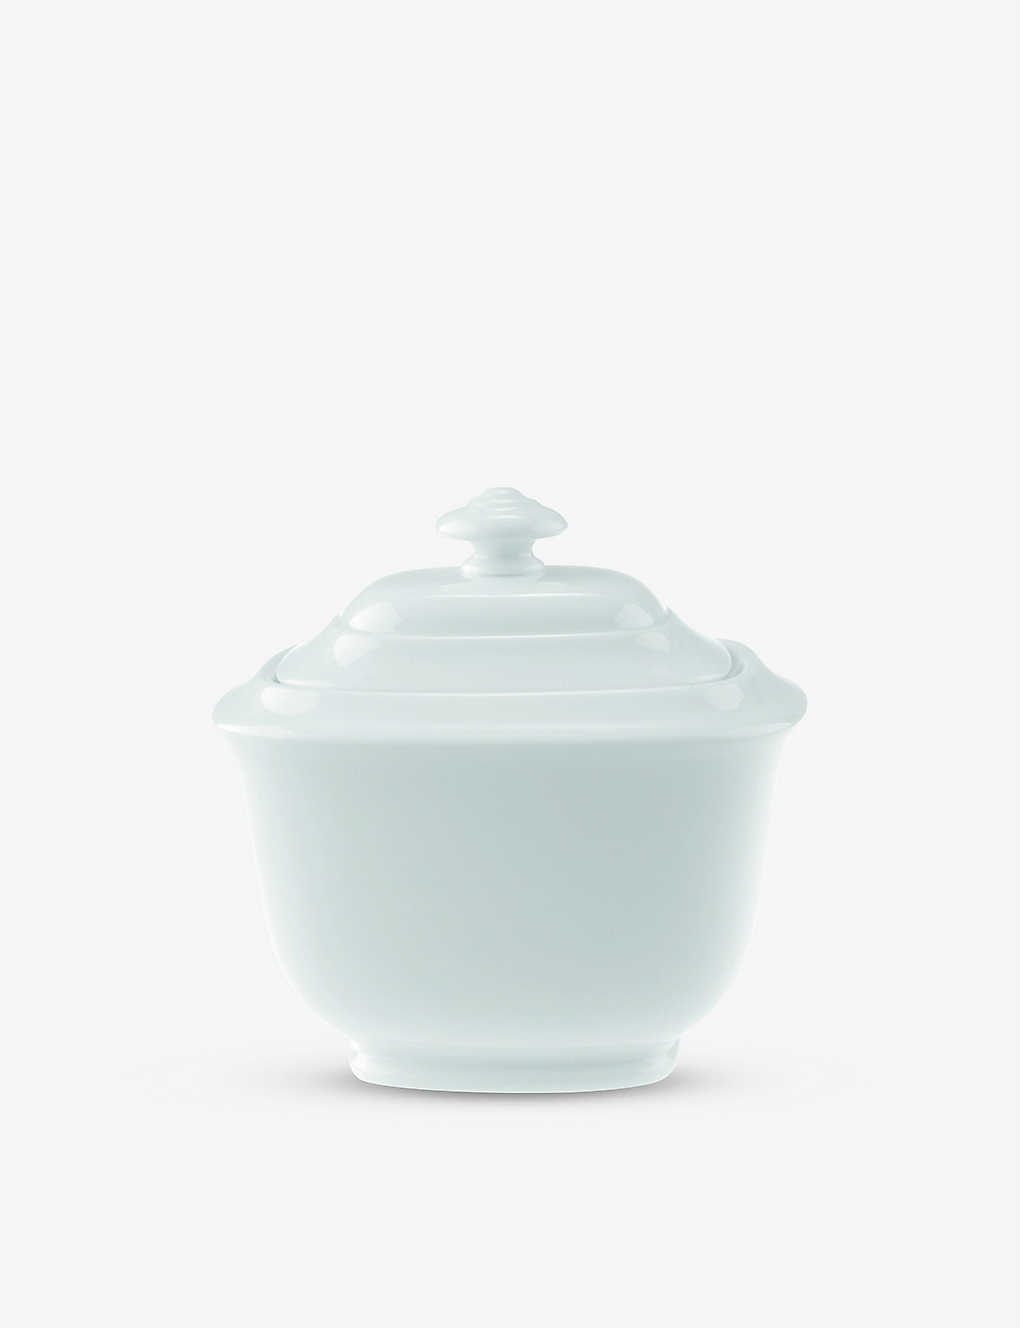 Villeroy & Boch Royal Porcelain Sugar Pot For Six People